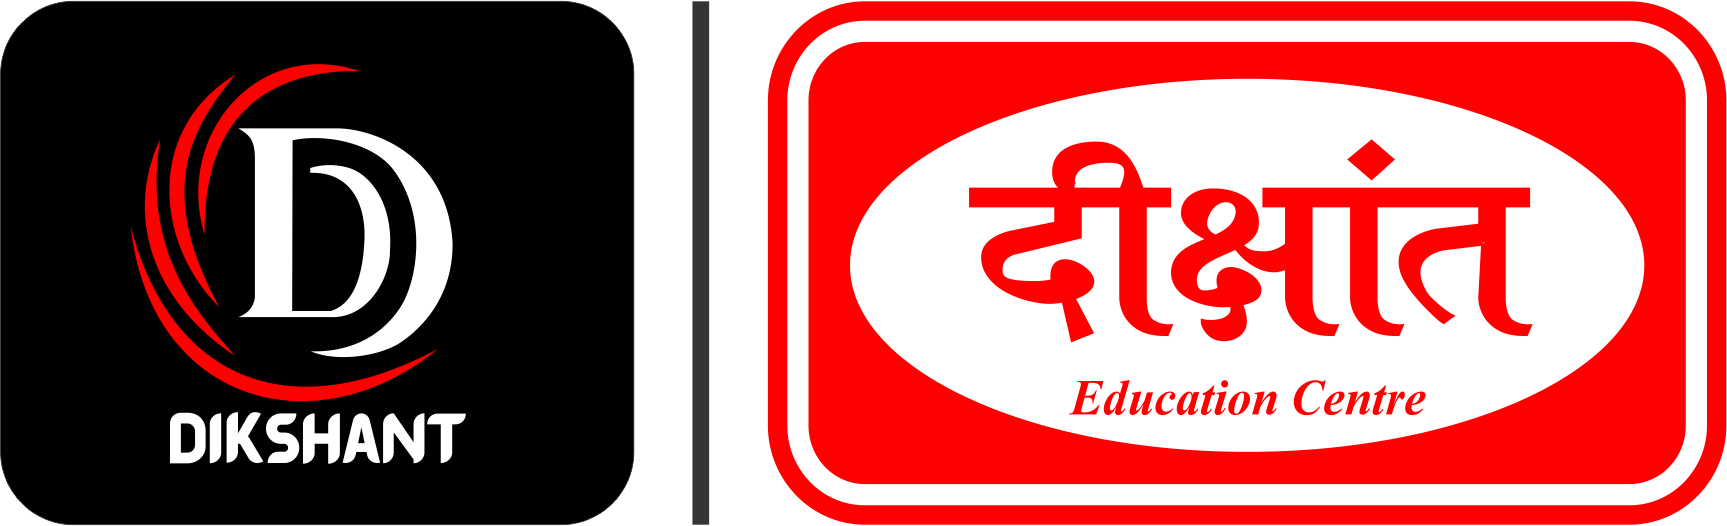 Dikshant Logo